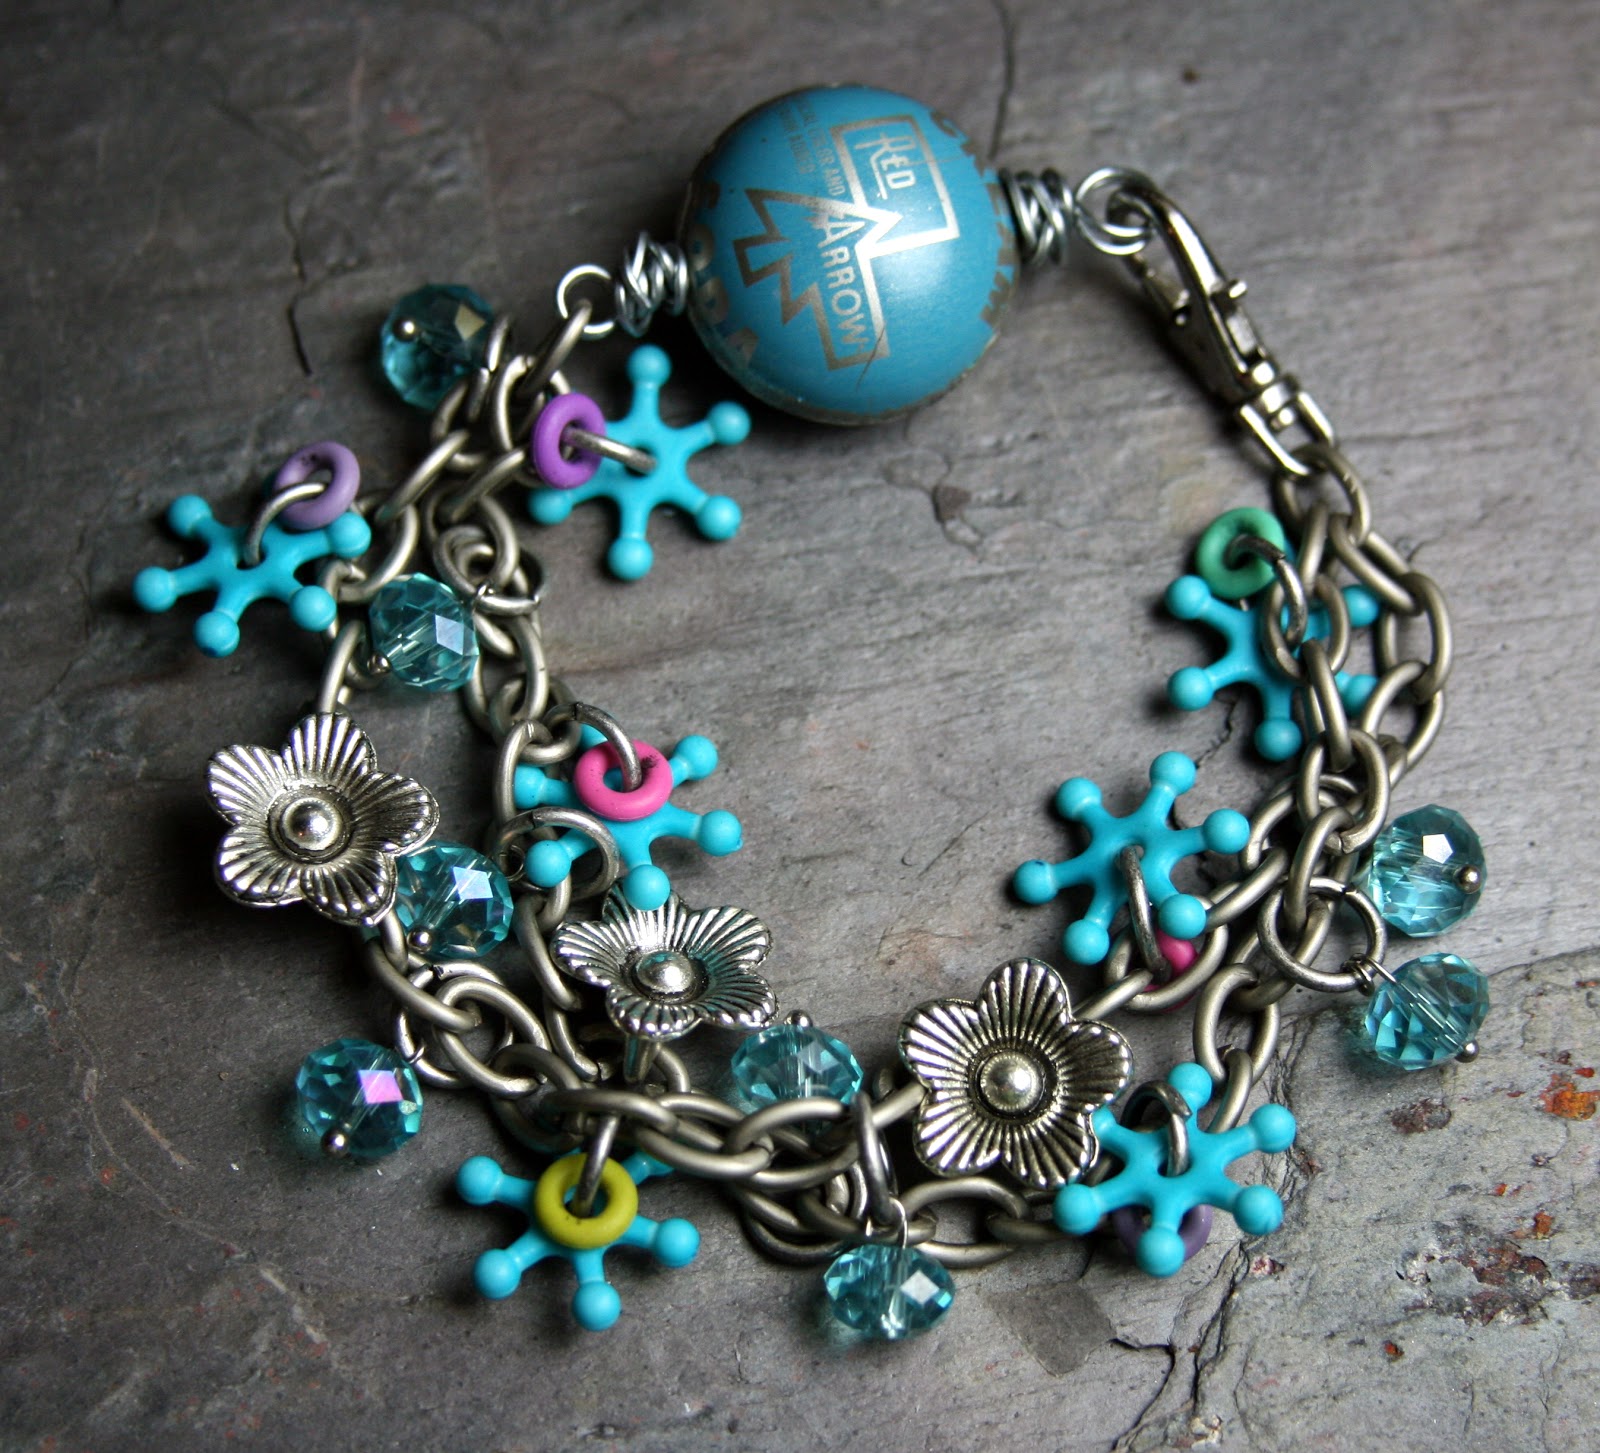 Art Bead Scene Blog: Call for Bracelets! 7,000 Bracelets for Hope